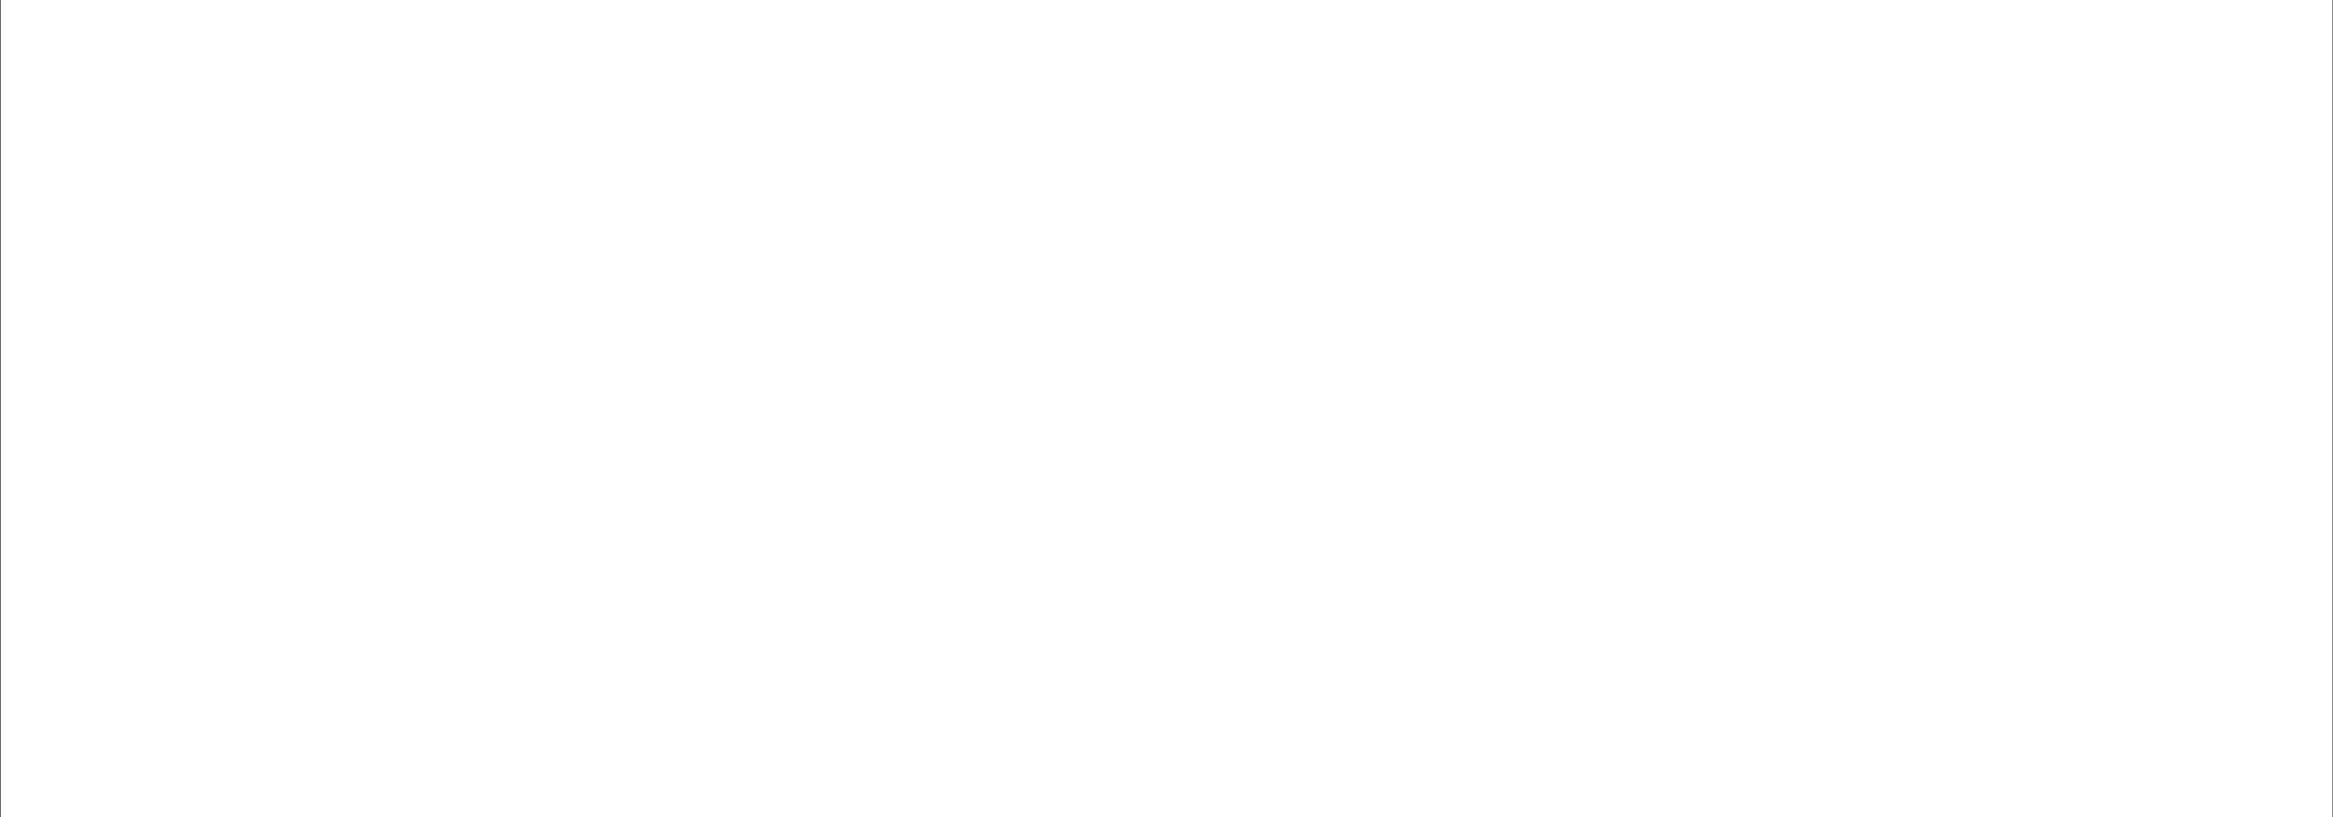 Loopnet-min